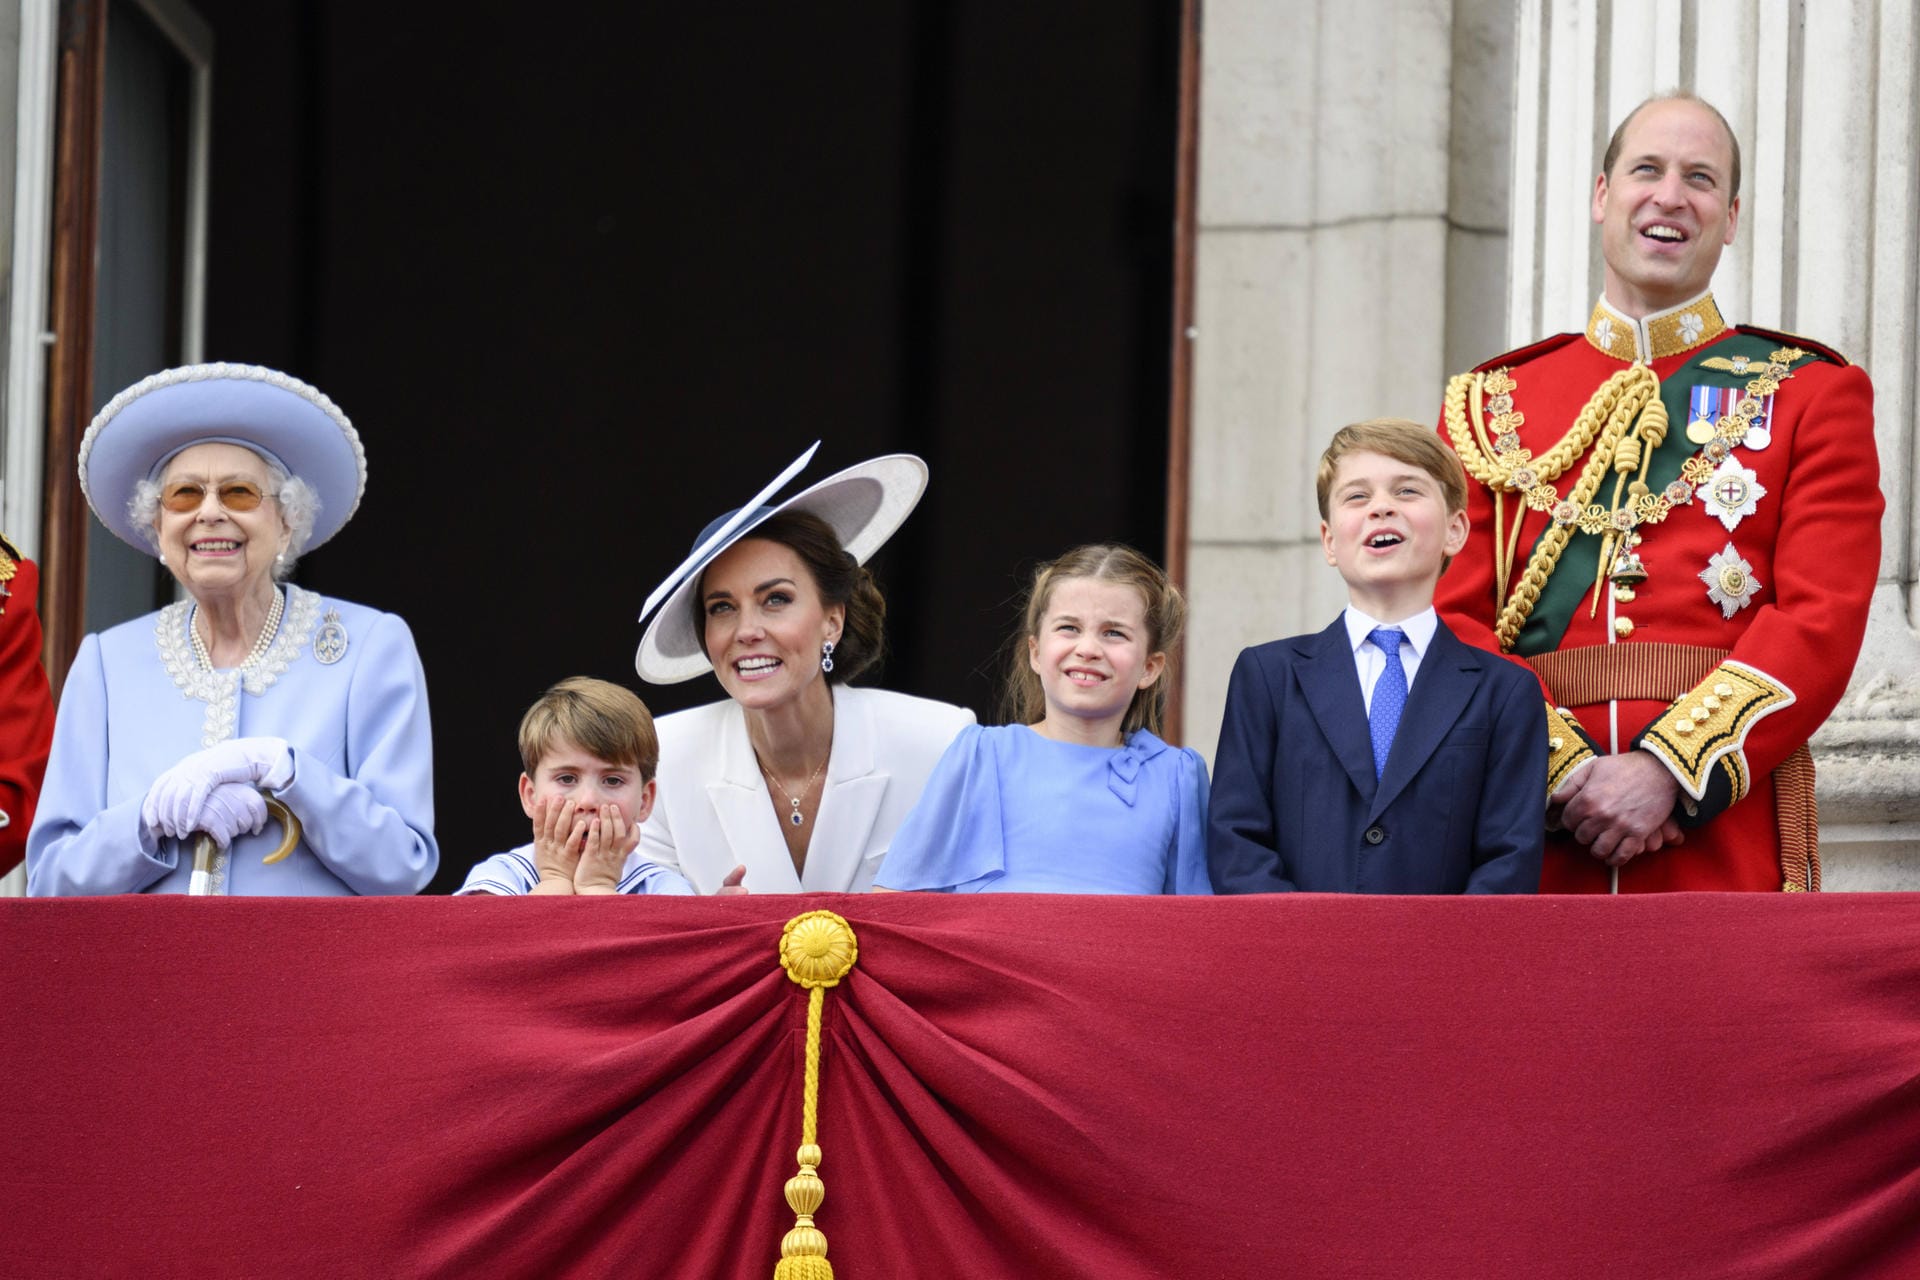 2022: Nach zweijähriger Corona-Pause konnte die Parade in diesem Jahr endlich wieder stattfinden und feierte auch das 70-jährige Thronjubiläum der Queen. Neben ihr auf dem Balkon: Prinz William und Ehefrau Kate mit ihren Kindern.